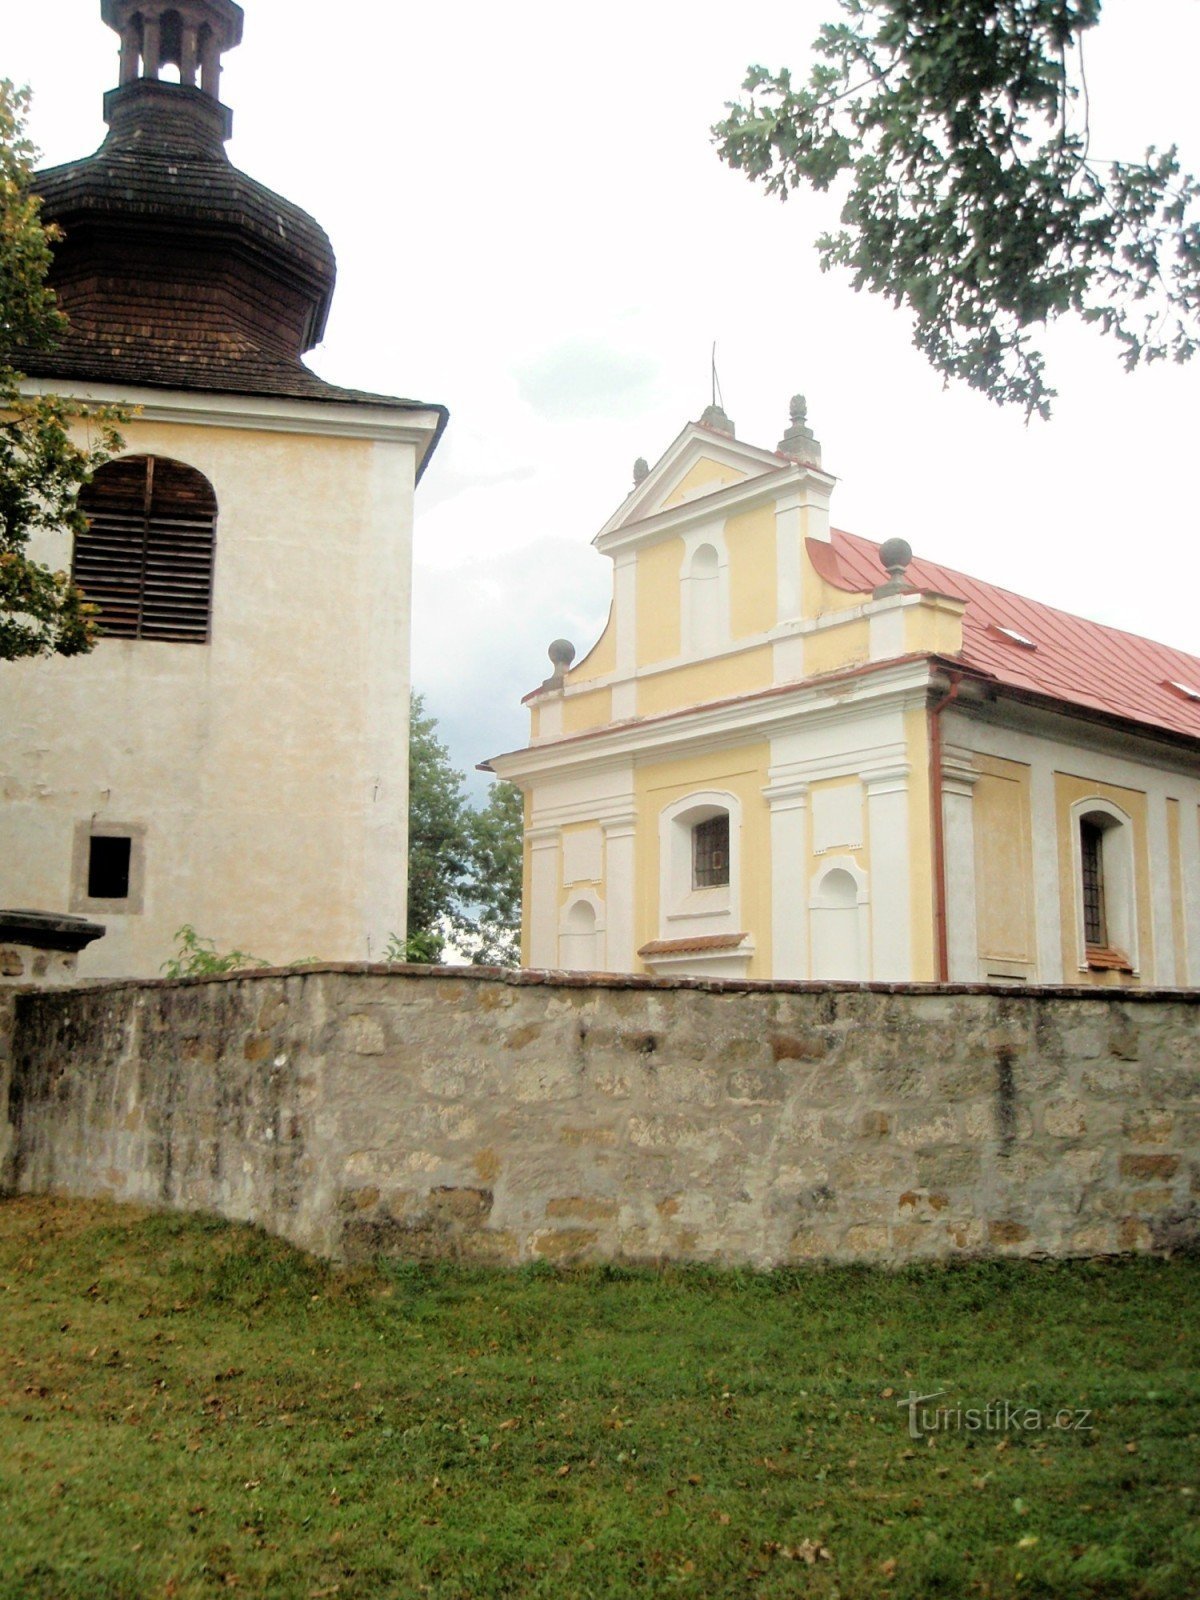 Église de St. Barbarie aux cloches